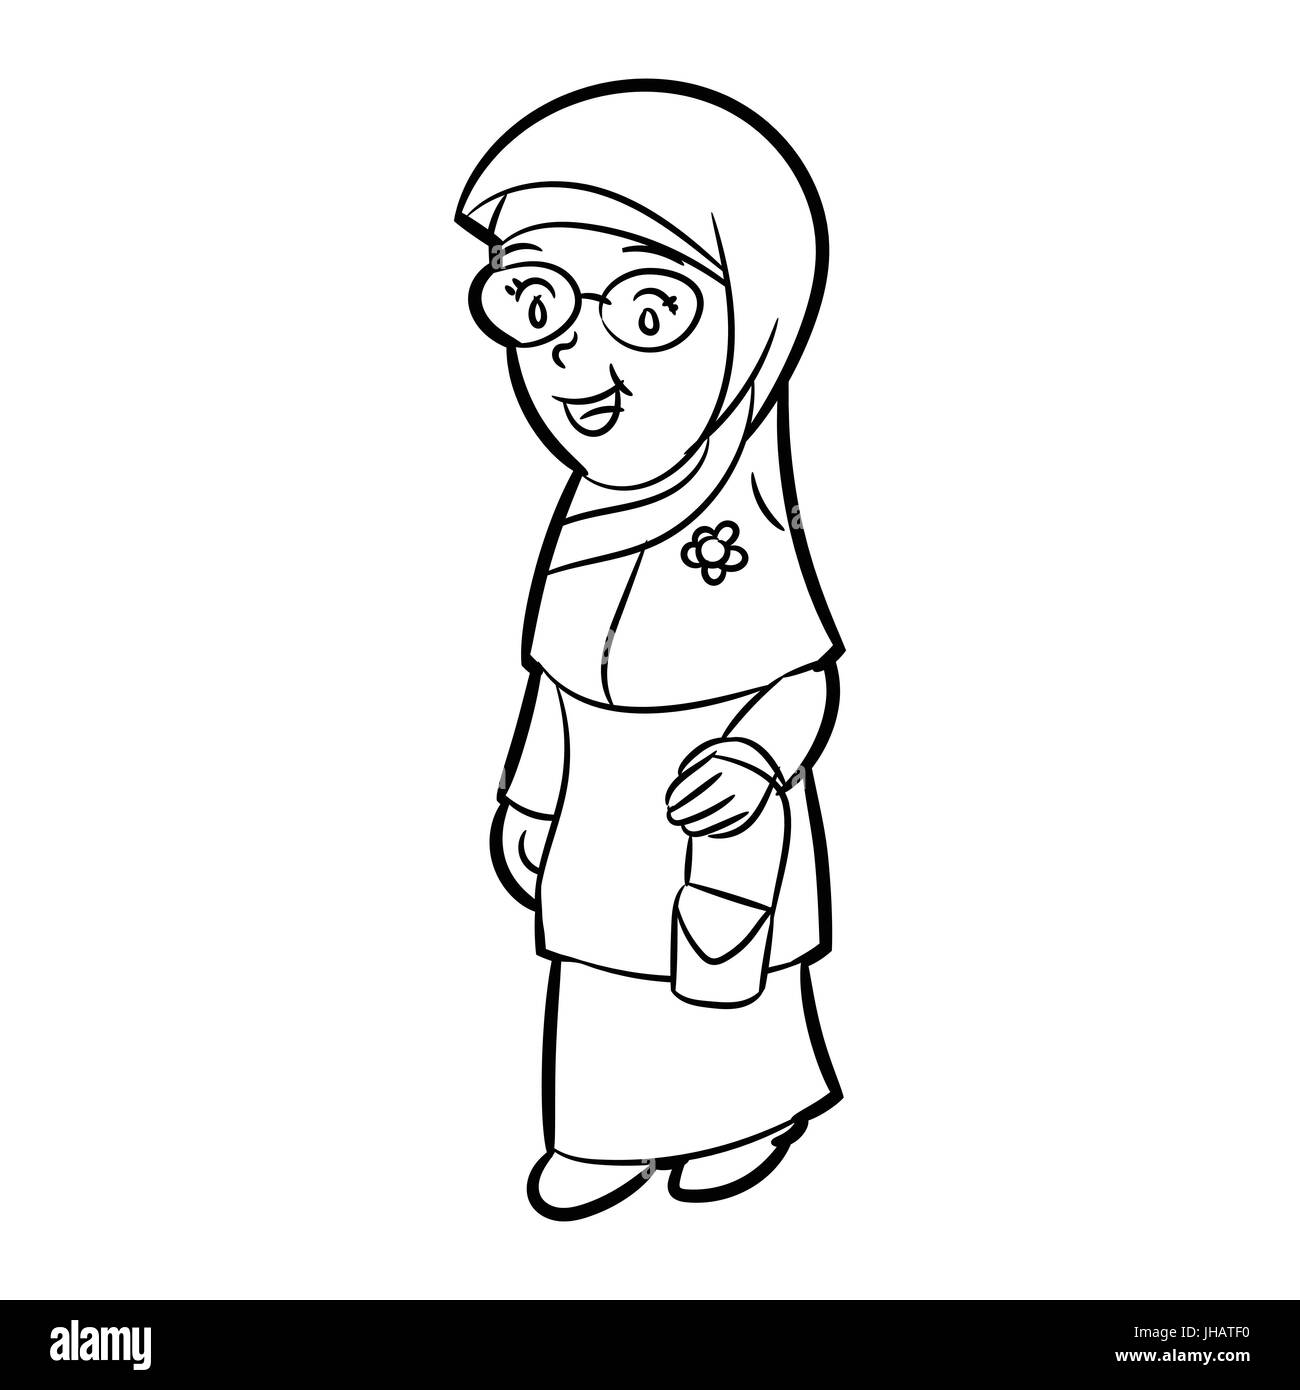 Croquis dessinés à la main de femme malais adultes isolés Cartoon Character, noir et blanc Cartoon Vector Illustration pour livre de coloriage - Ligne dessinée Vector Illustration de Vecteur